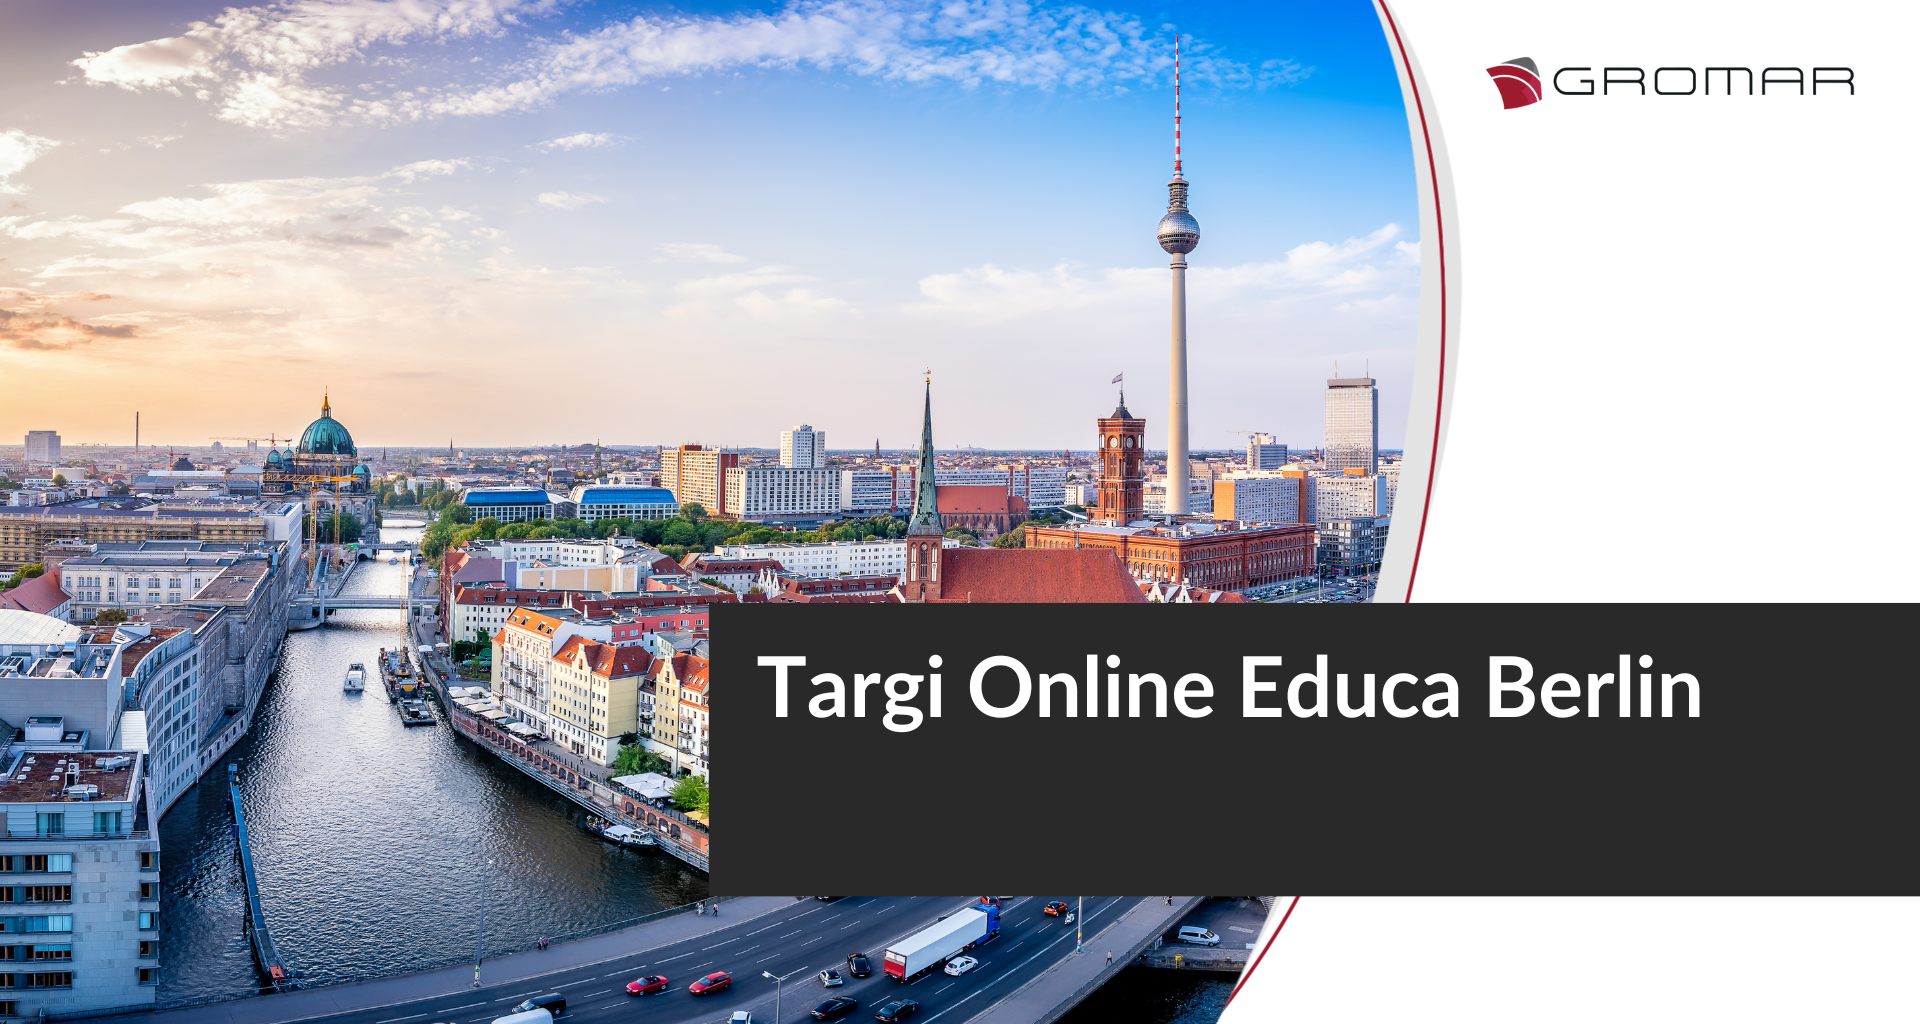 Online Educa Berlin - here we go again!